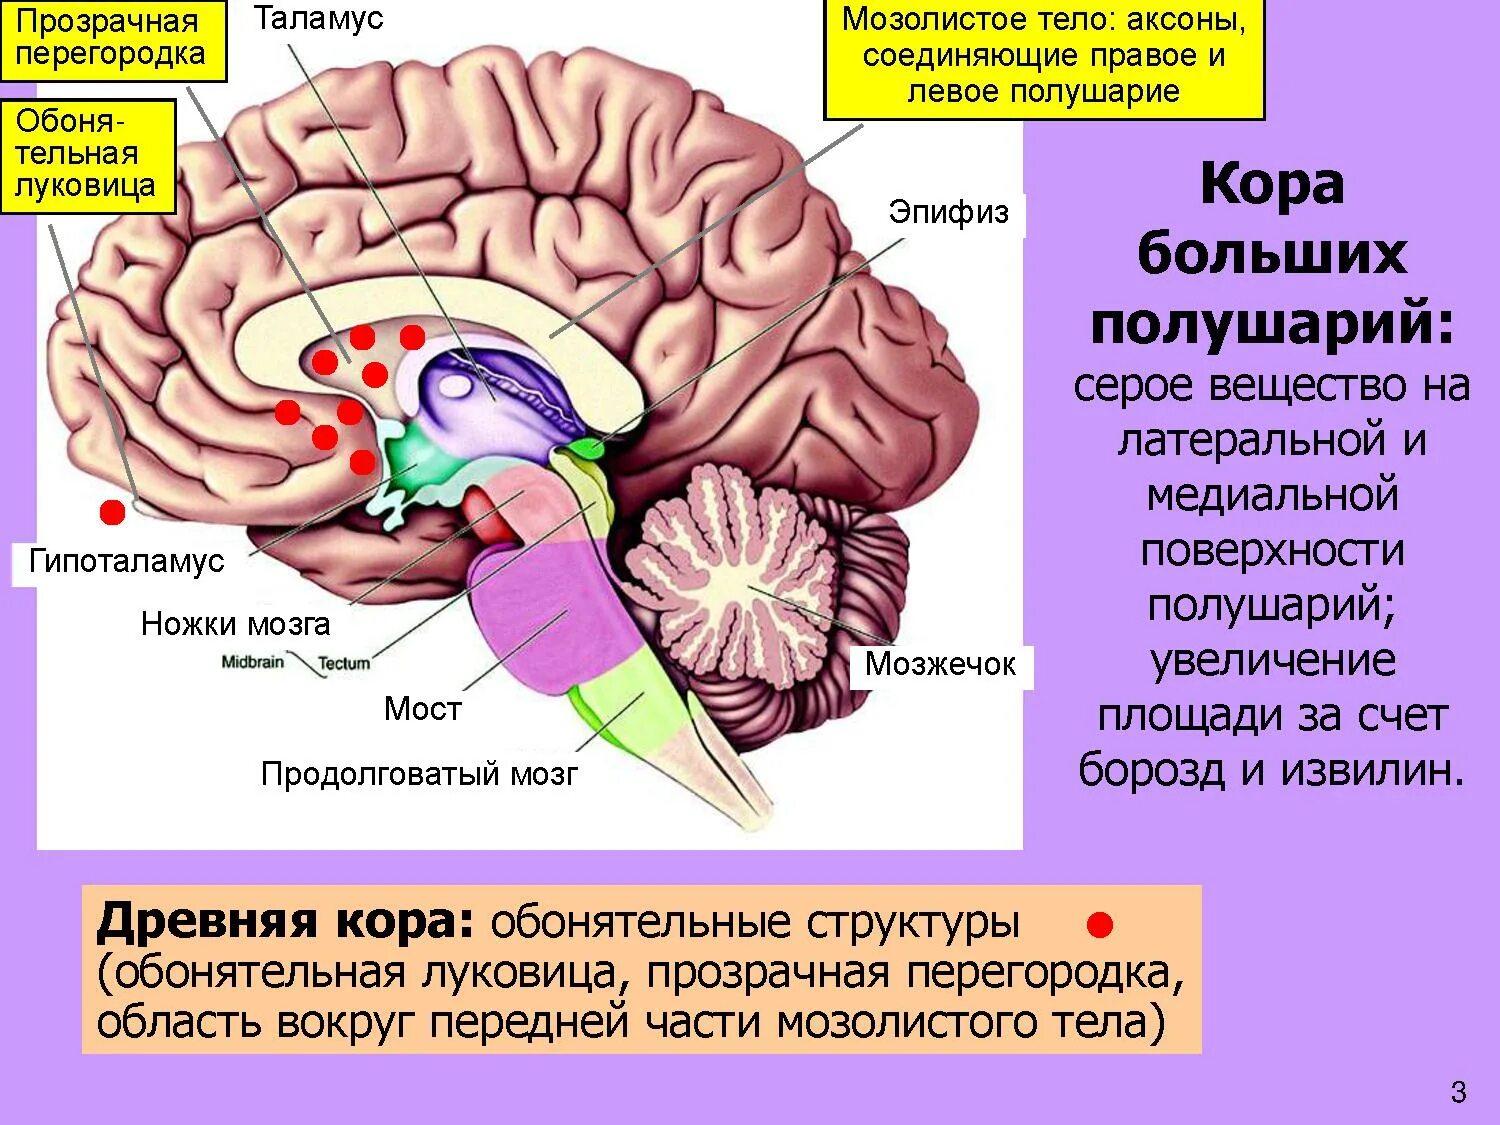 Болевой центр в мозге. Мозолистое тело конечного мозга функции. Прозрачная перегородка мозга анатомия. Строение мозолистого тела головного мозга. Таламус, гипоталамус, мост, мозжечок, продолговатый мозг..